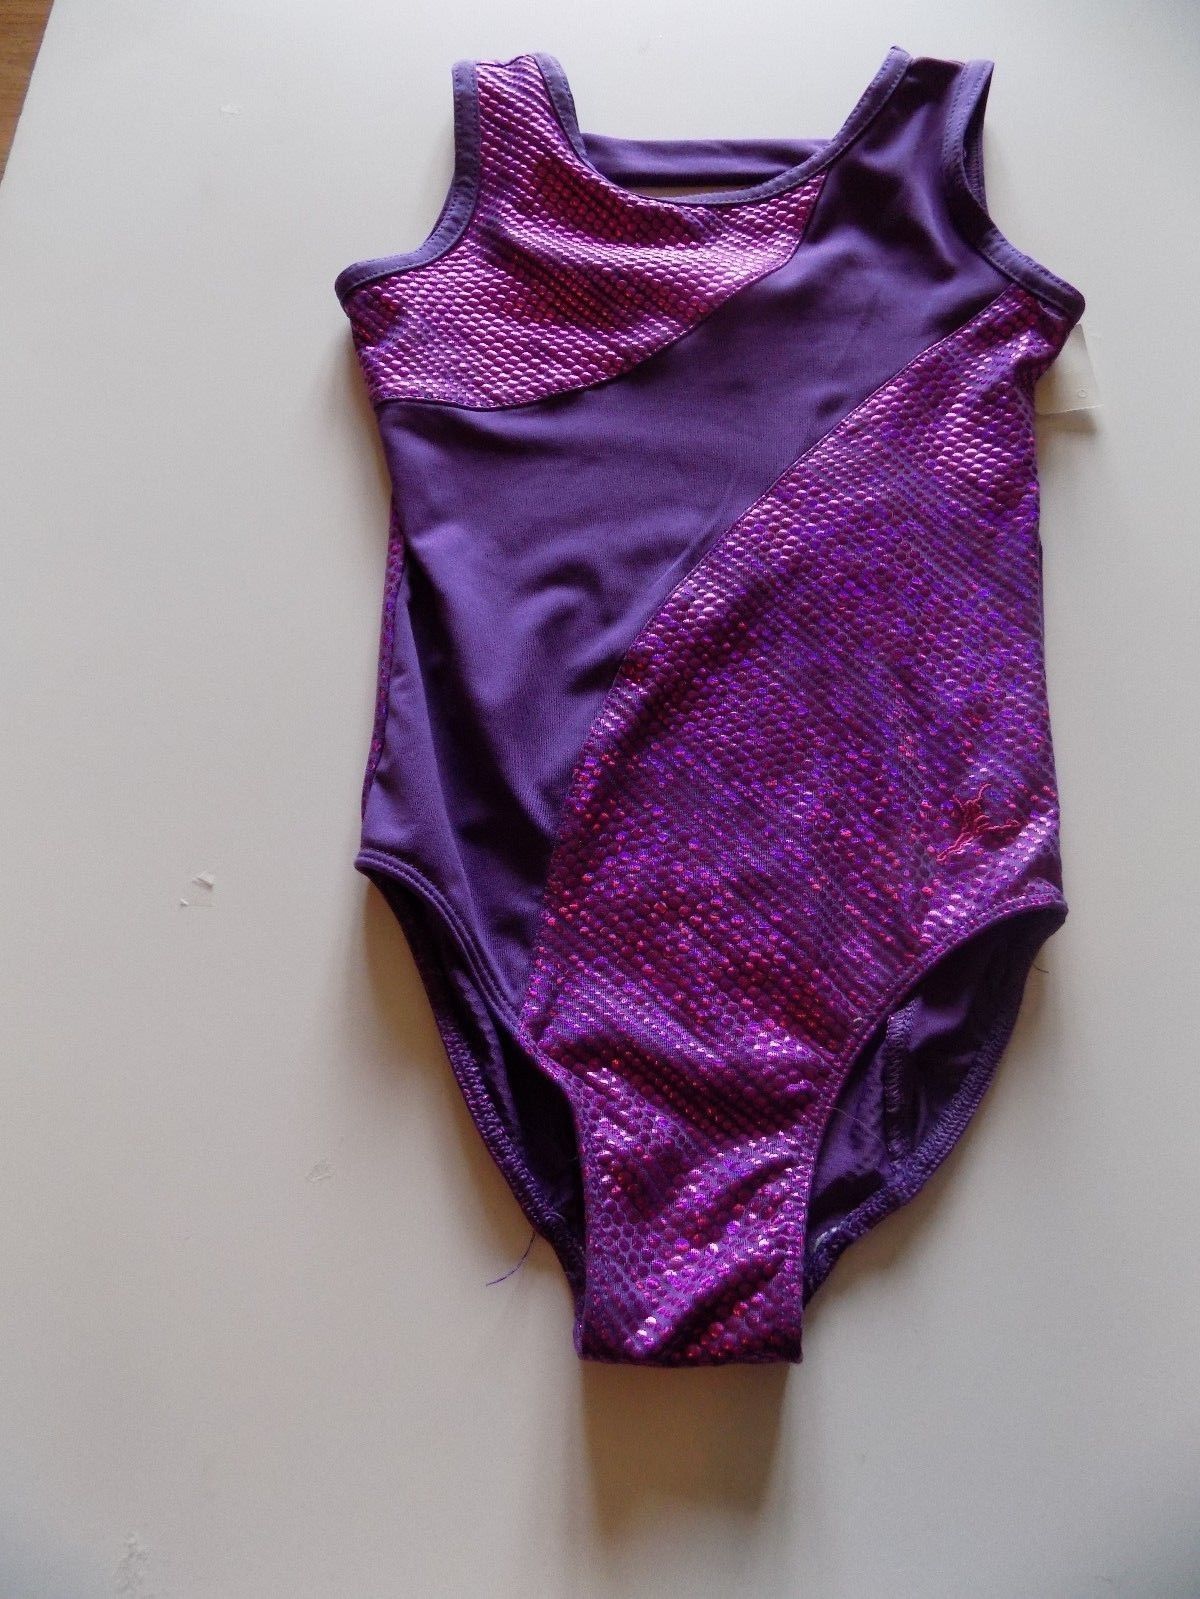 Primary image for Size XS Future Star Capezio Dance Gymnastics Leotard Purple Metallic Shine EUC